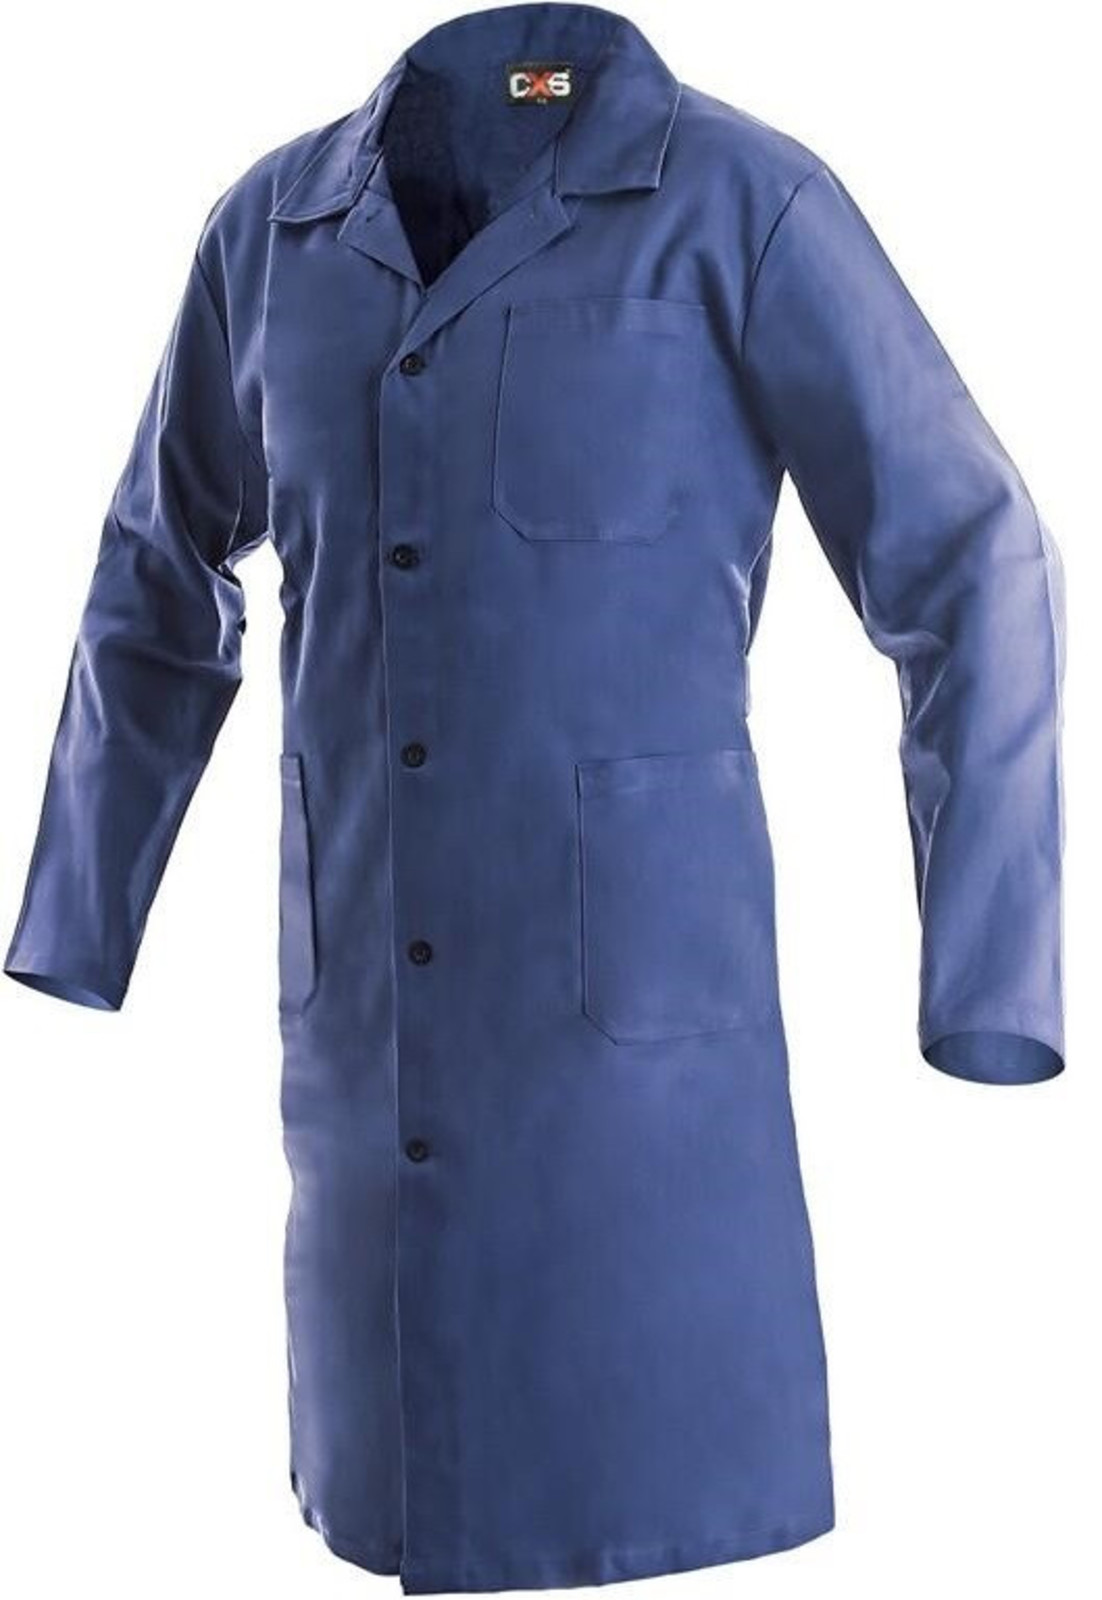 Pánsky pracovný plášť CXS Klasik Venca - veľkosť: 44, farba: modrá